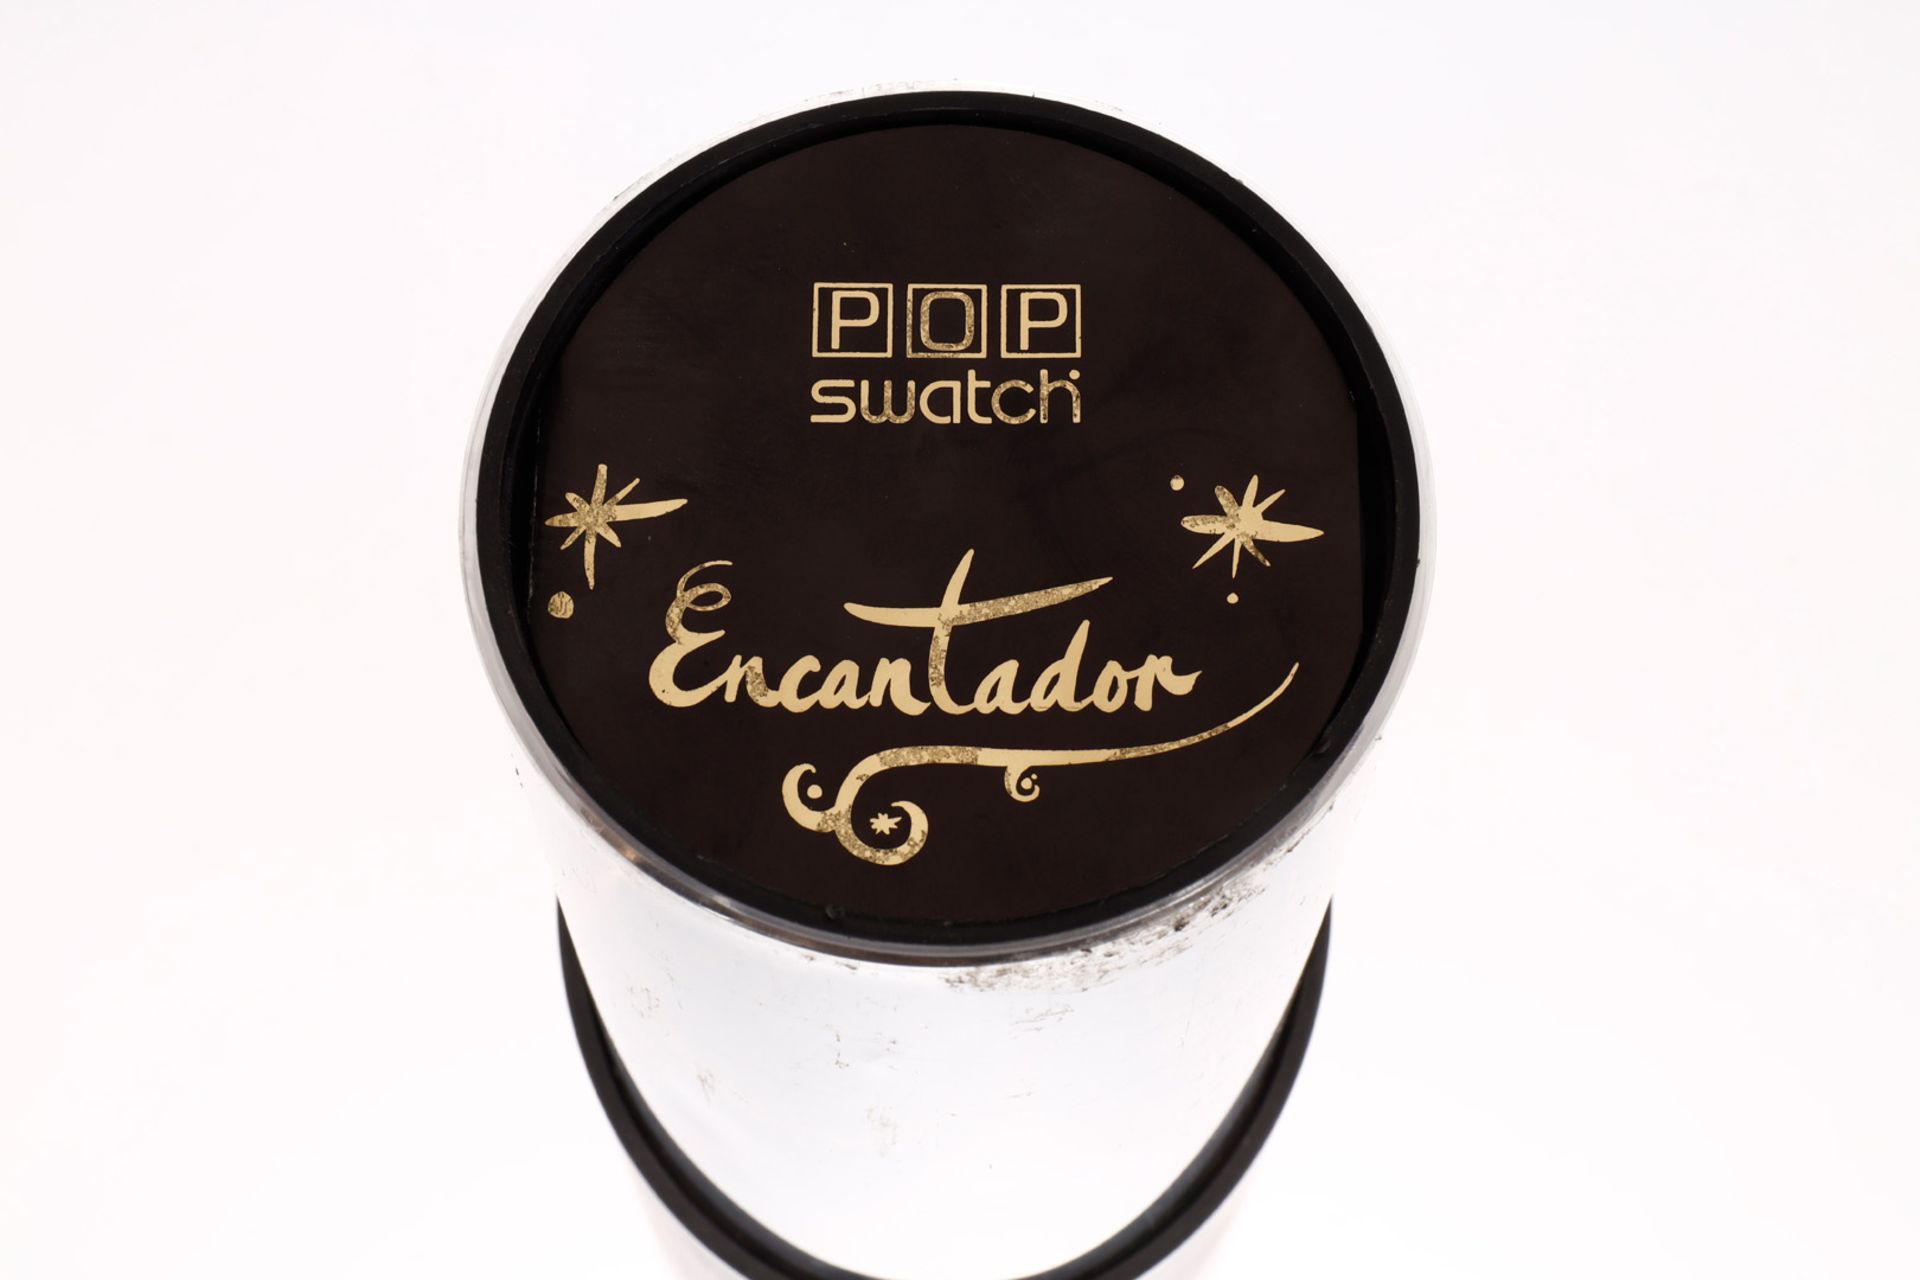 Swatch Armbanduhr ”Encantador”, mit Garantieheft, leicht verstaubt, min. Gebrauchsspuren, OVP, sonst - Bild 2 aus 6